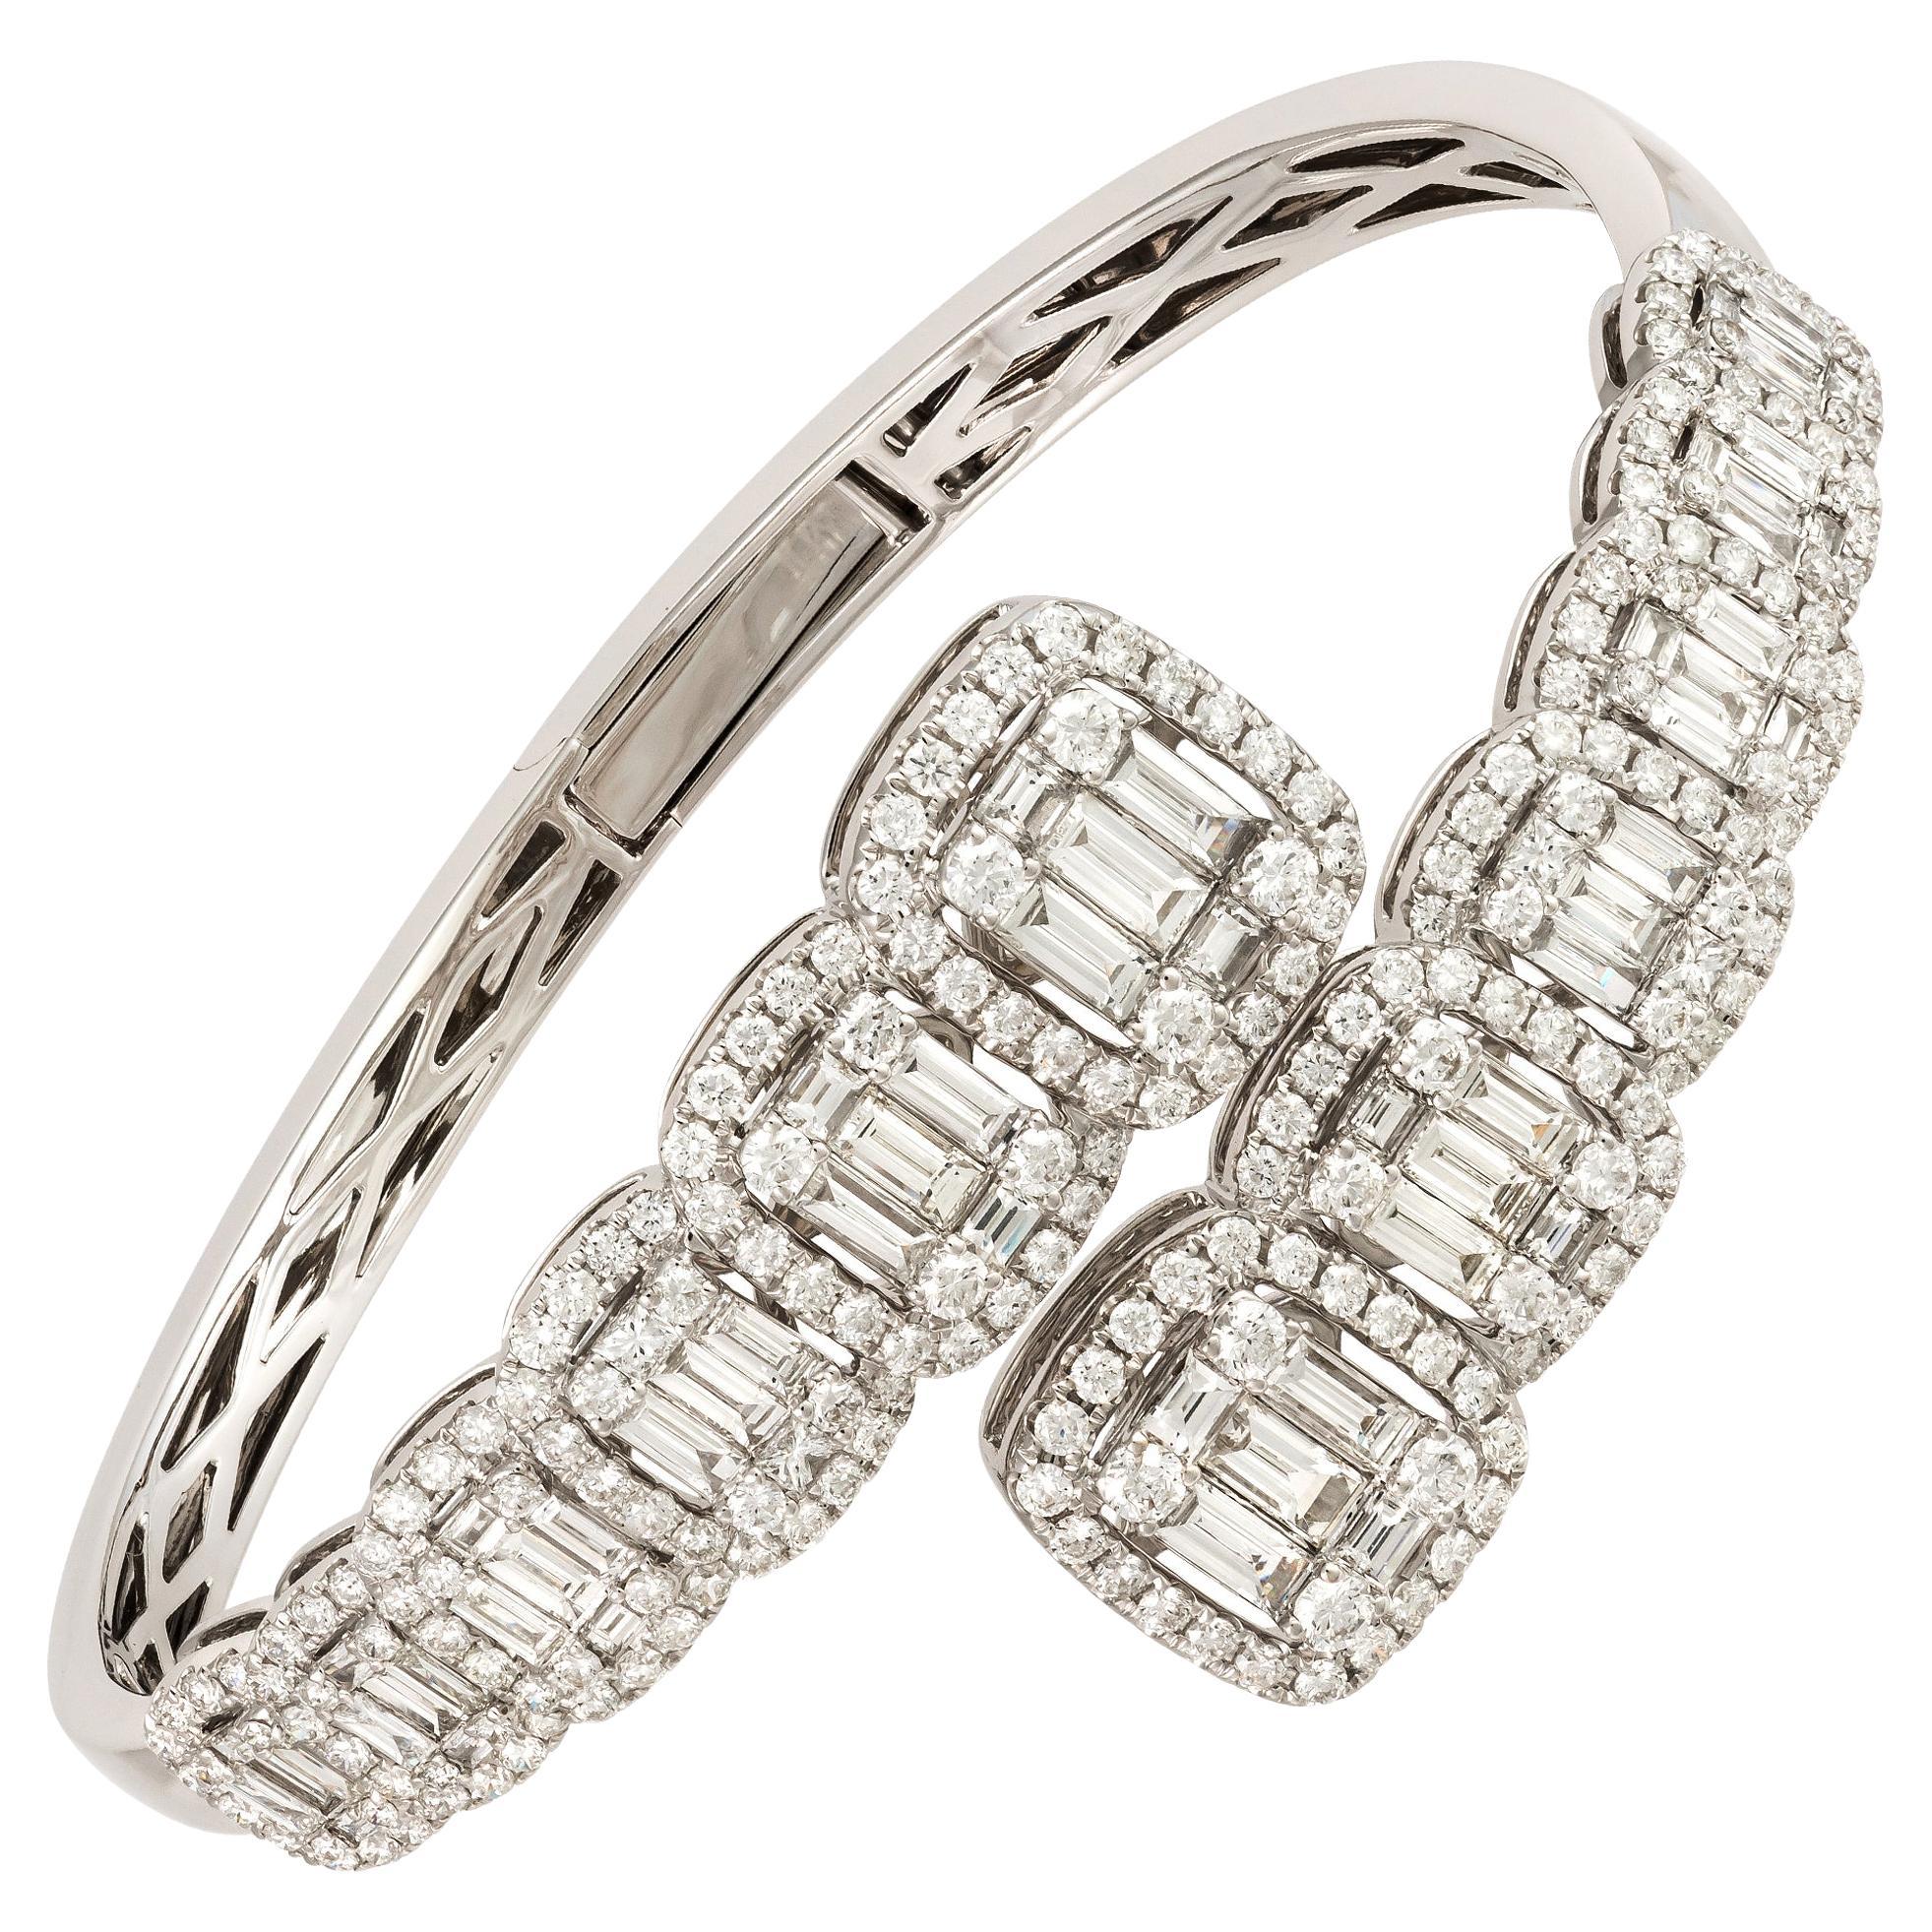 Magnificent White Gold 18K Bracelet Diamond for Her